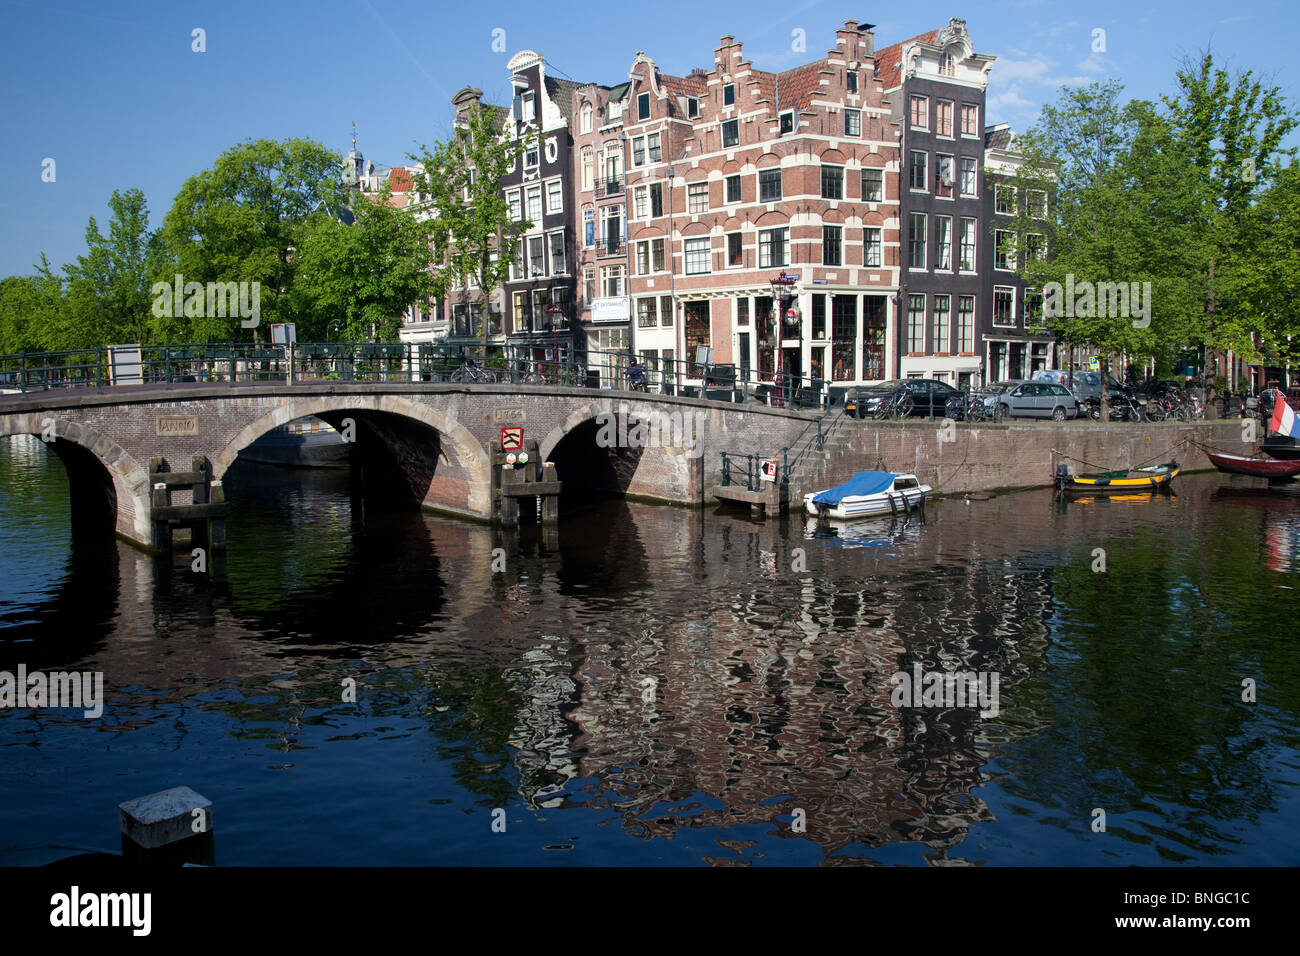 Maisons du Canal et d'arbres sur la jonction de deux canaux dans la ville d'Amsterdam Banque D'Images